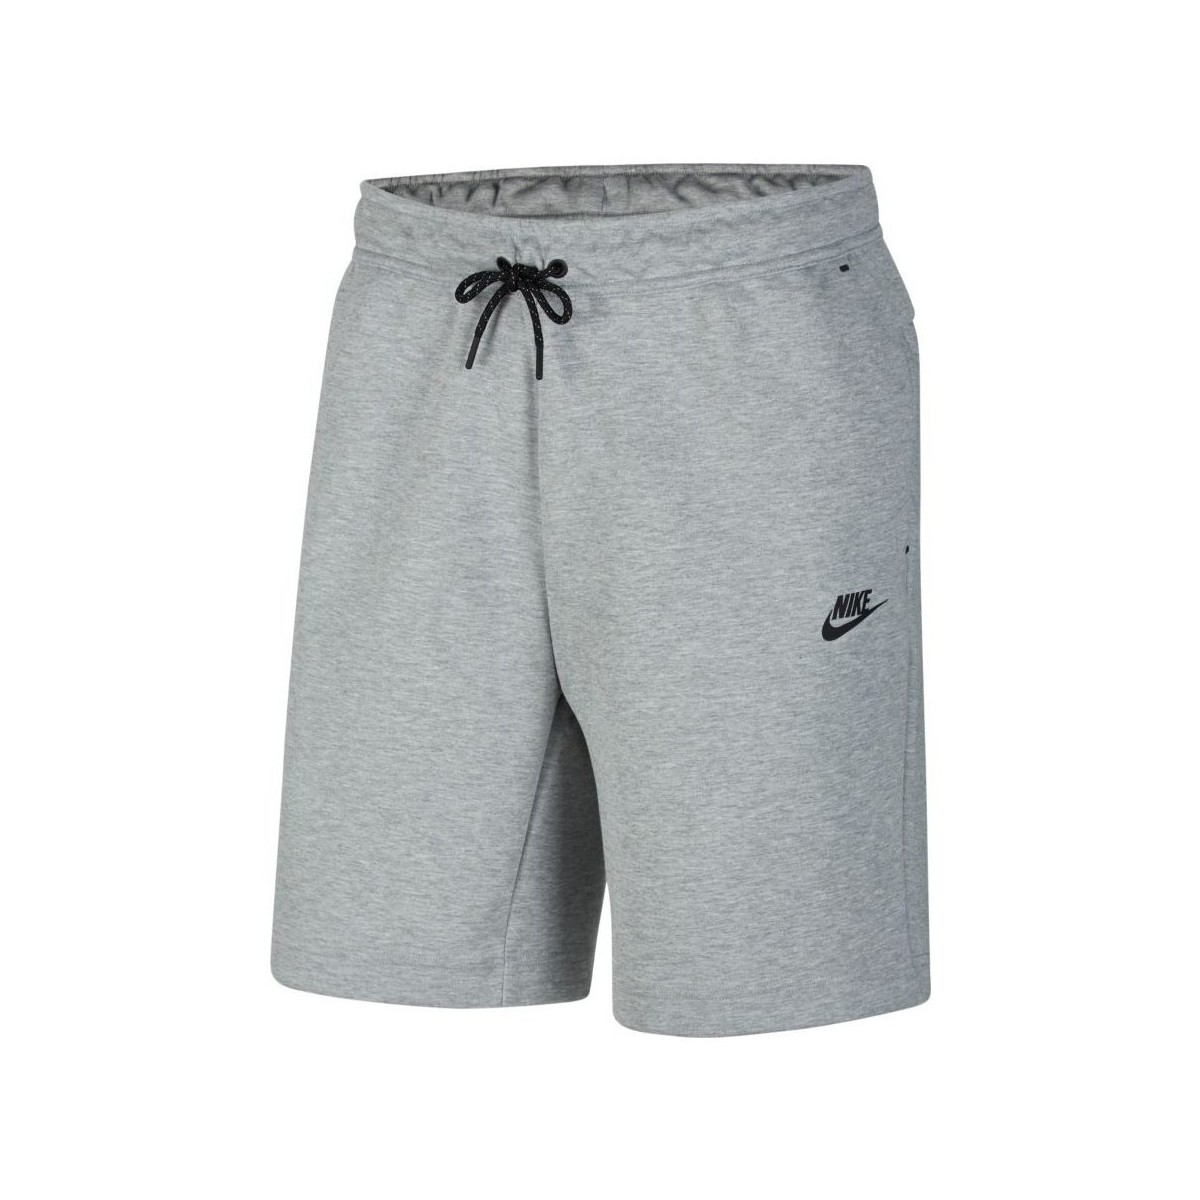 Textil Muži Tříčtvrteční kalhoty Nike Sportswear Tech Fleece Šedá